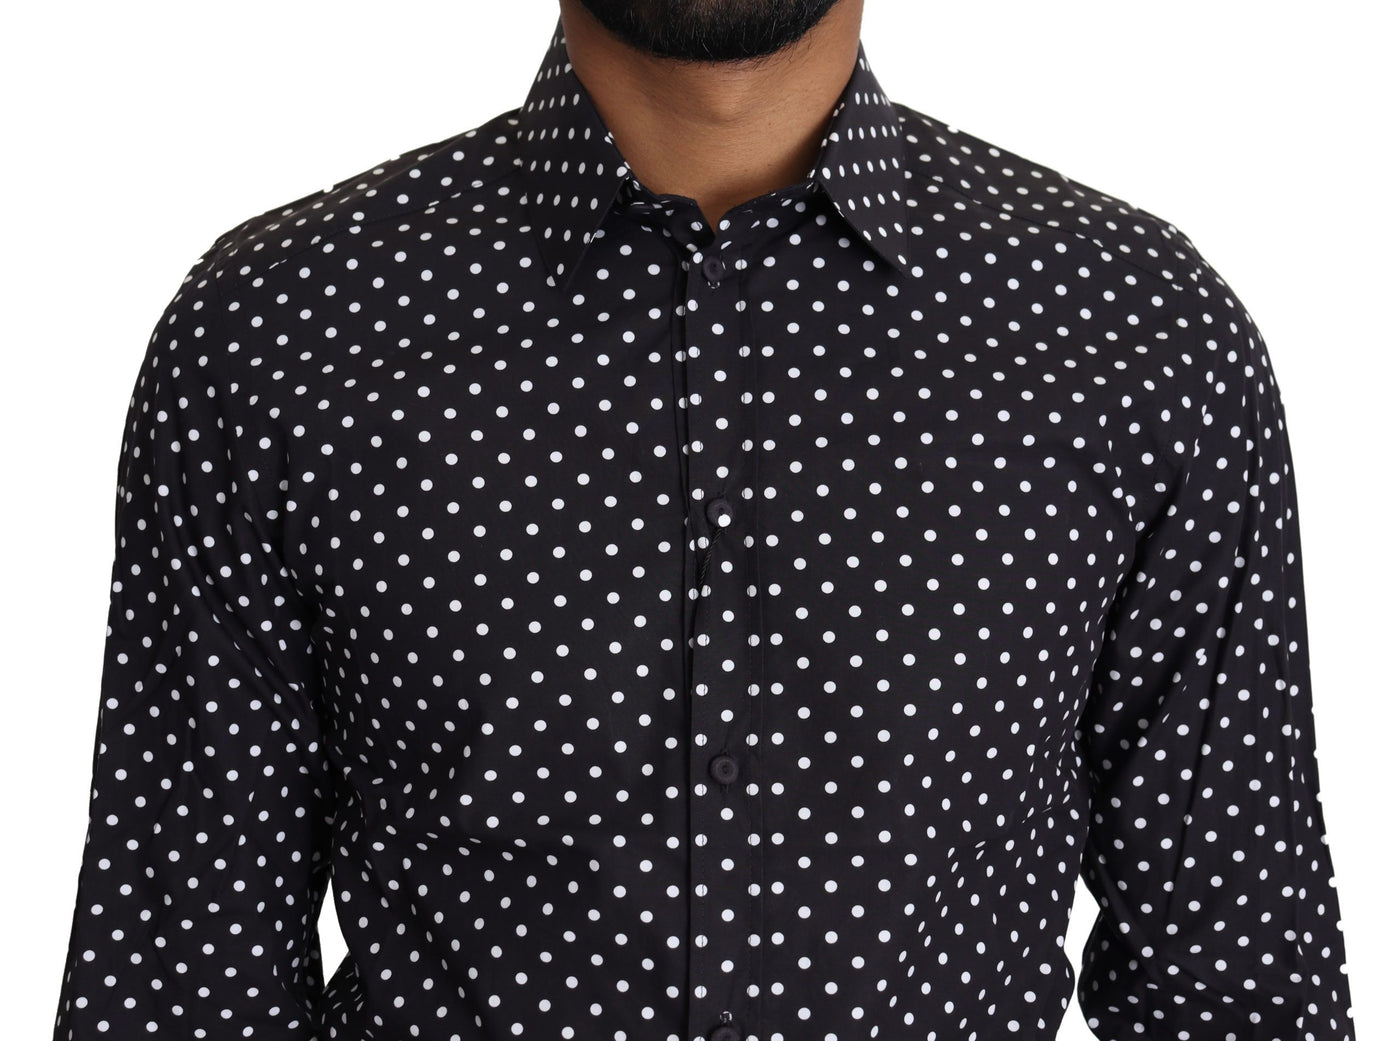 Dolce & Gabbana Black White Polka Dots Casual Shirt